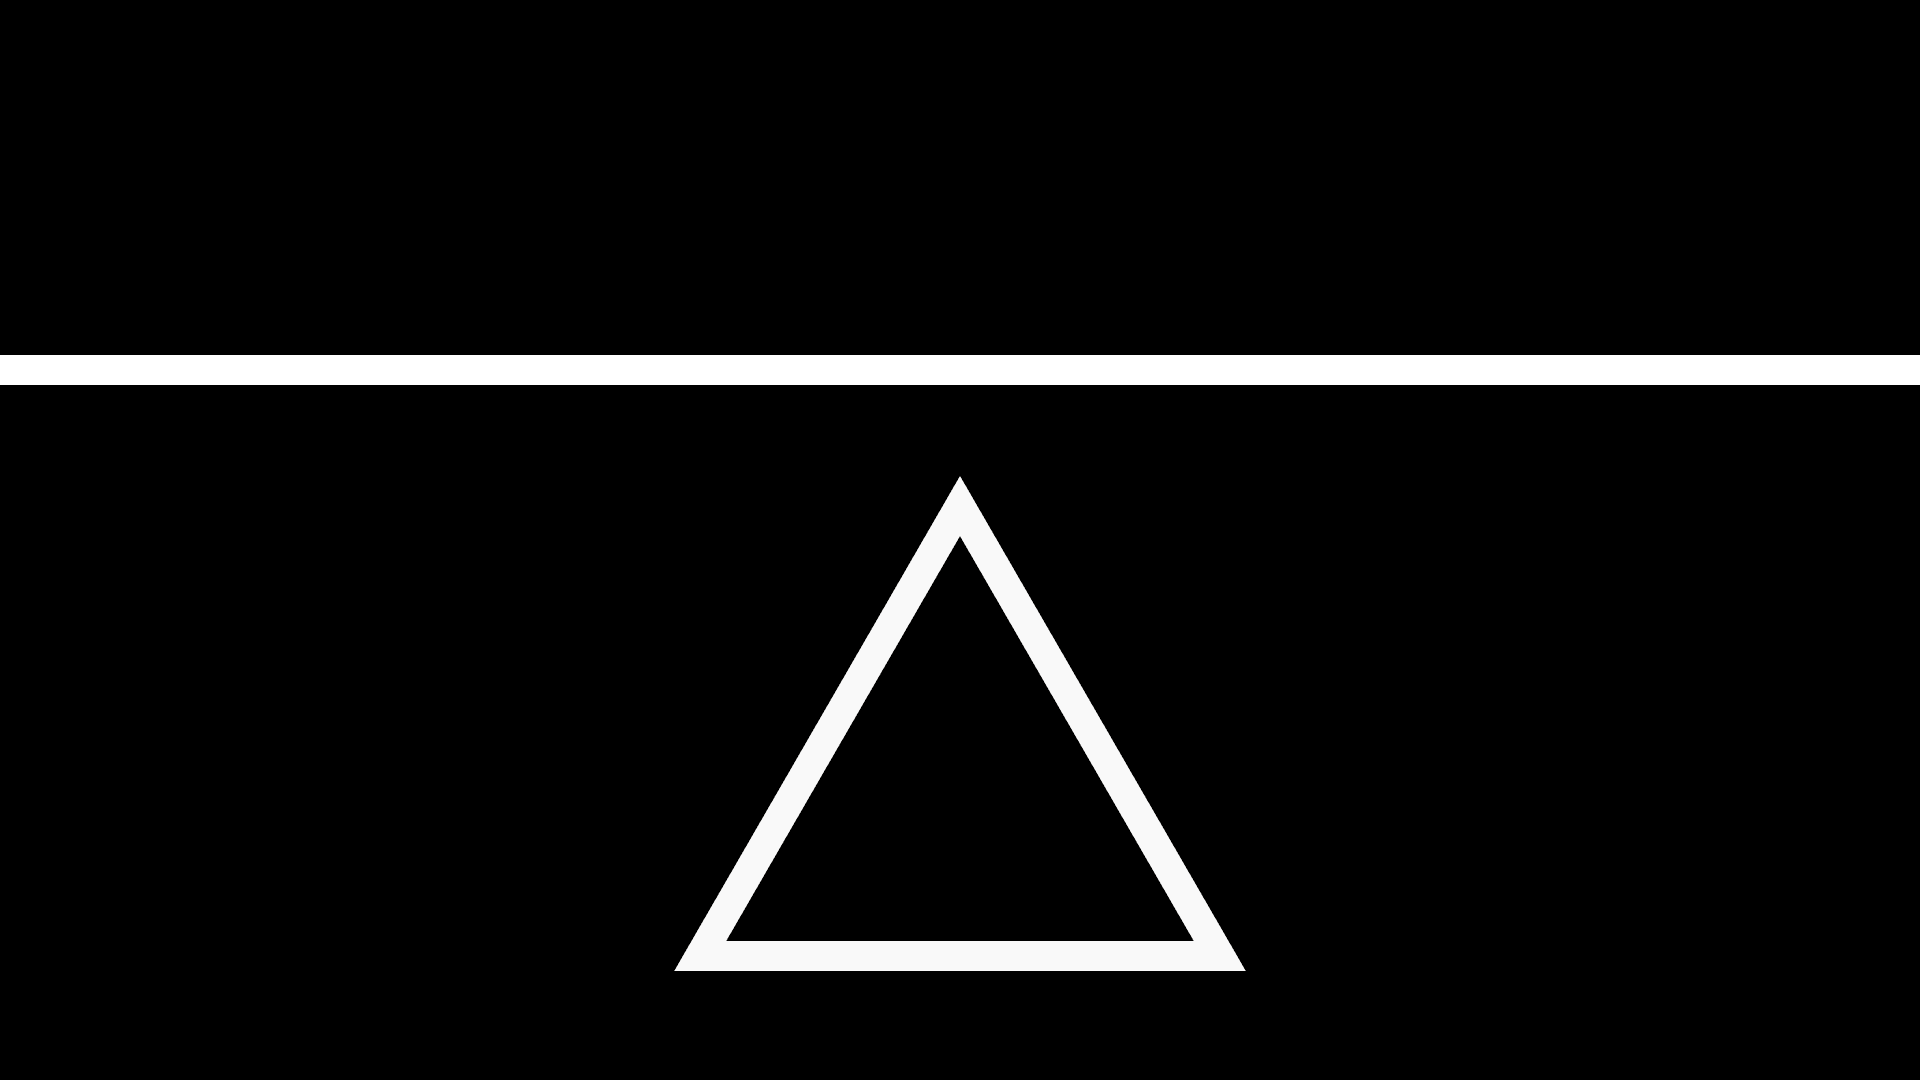 Gif заставки. Треугольник на черном фоне. Белый треугольник на черном фоне. Минимализм треугольник. Красивые треугольники на черном фоне.